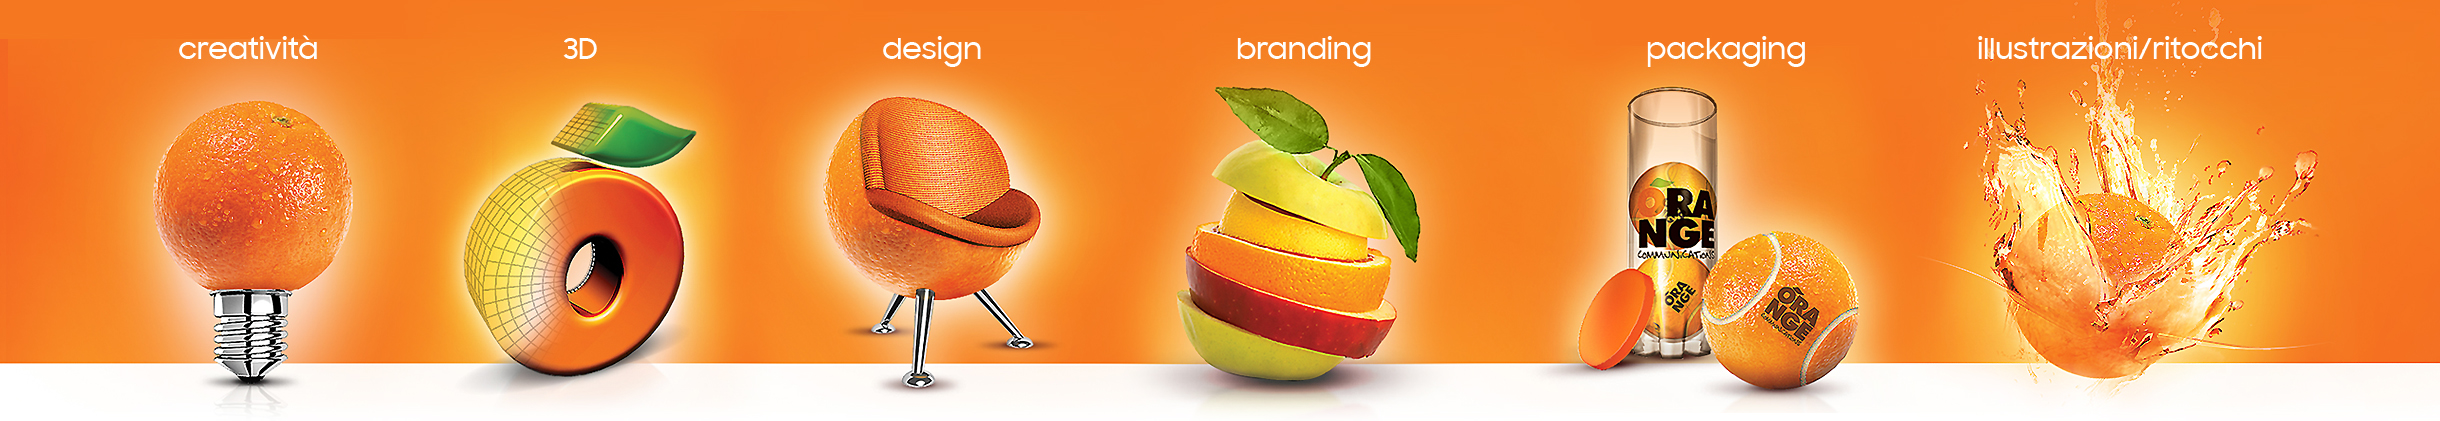 creatività design branding packaging illustrazioni/ritocchi 3D